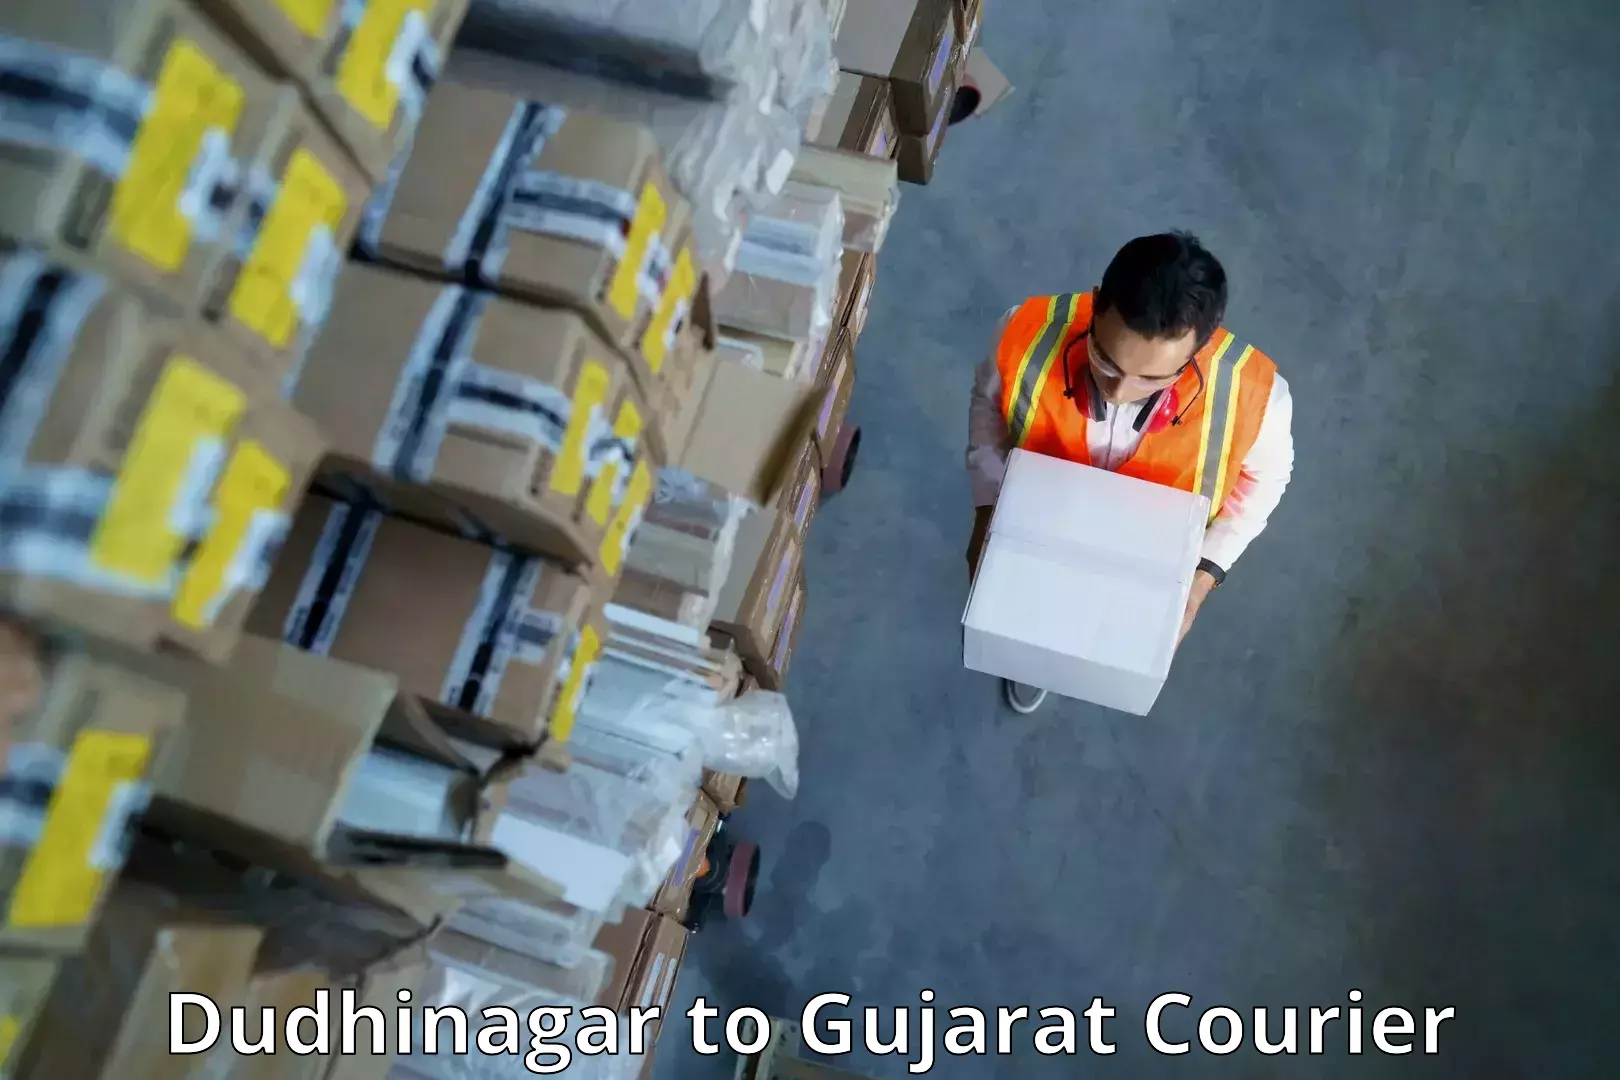 Fragile item shipping Dudhinagar to Gujarat